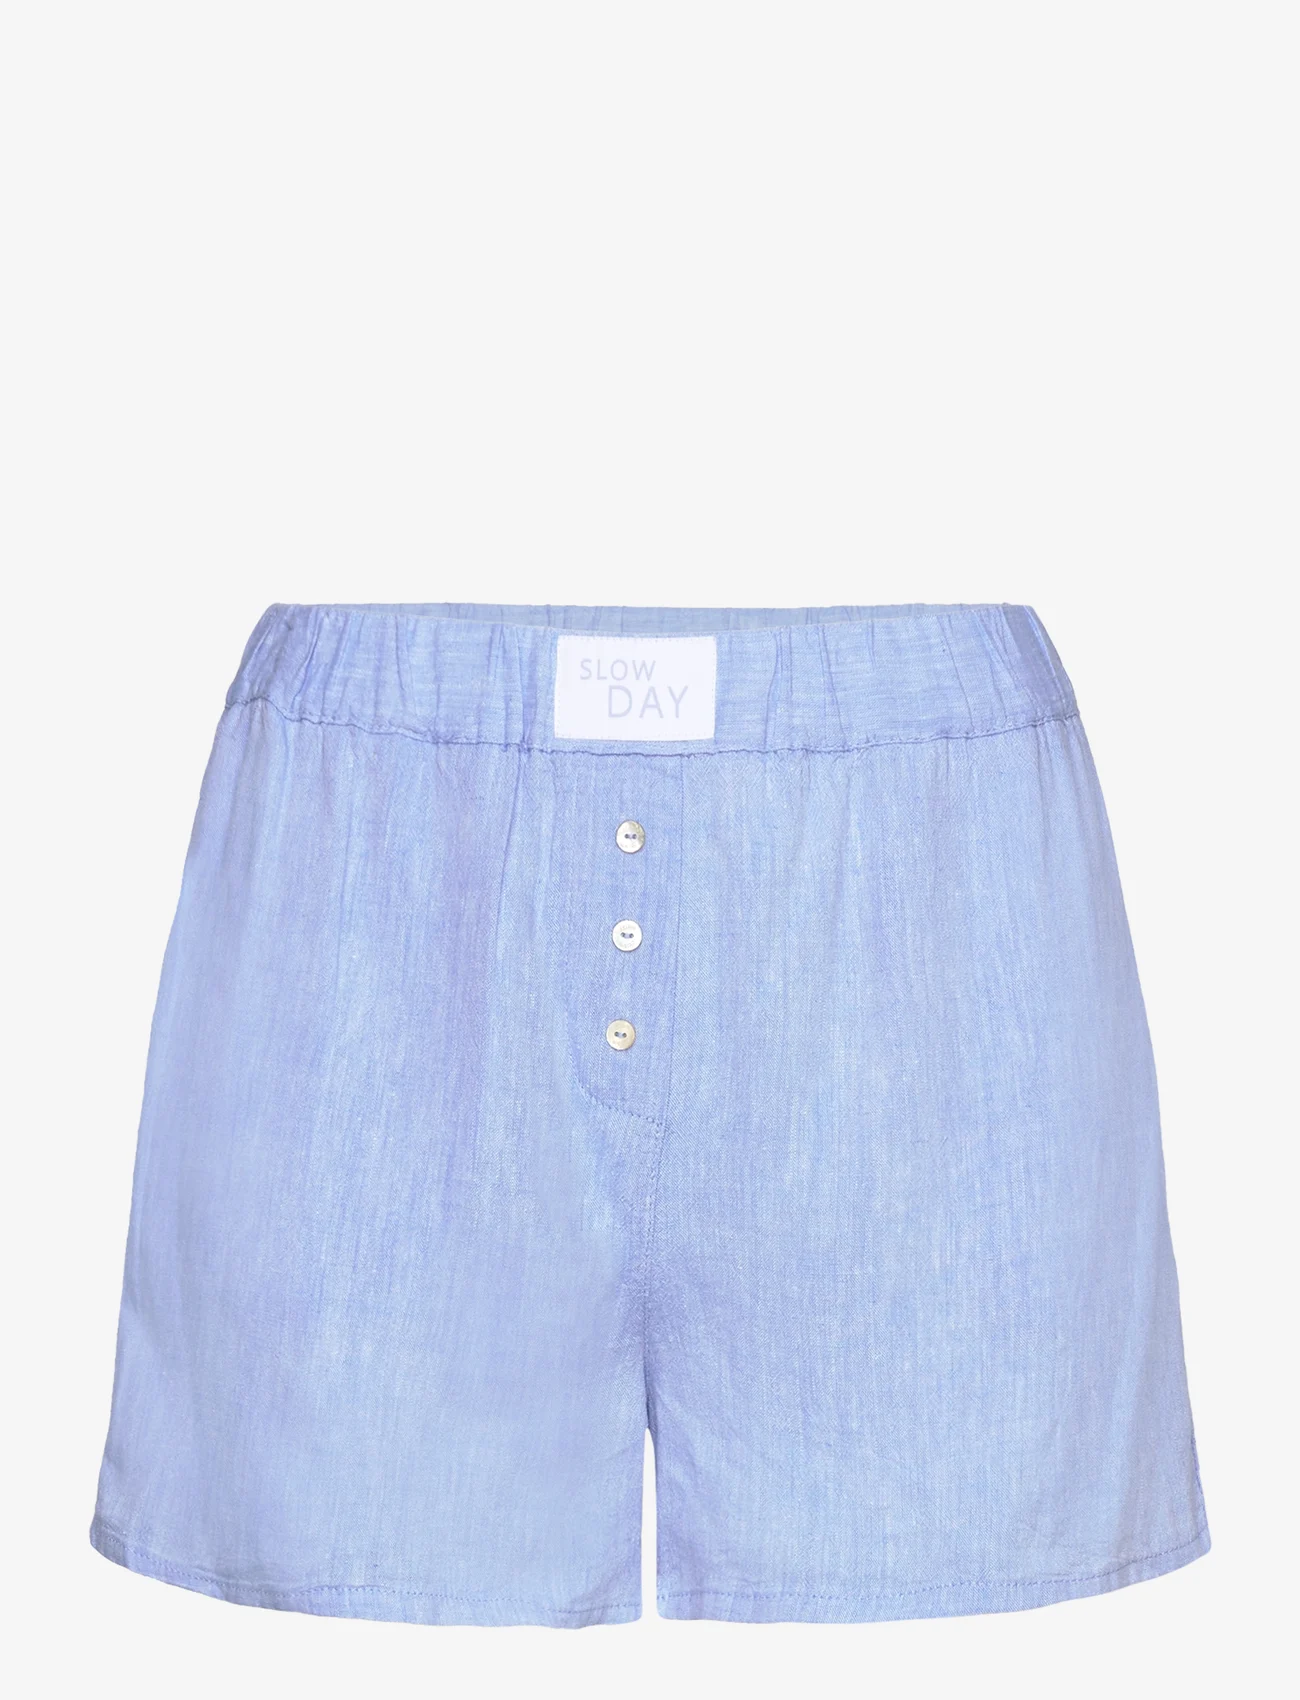 Etam - Justine - Short pyjama bottom - mažiausios kainos - sky blue - 0